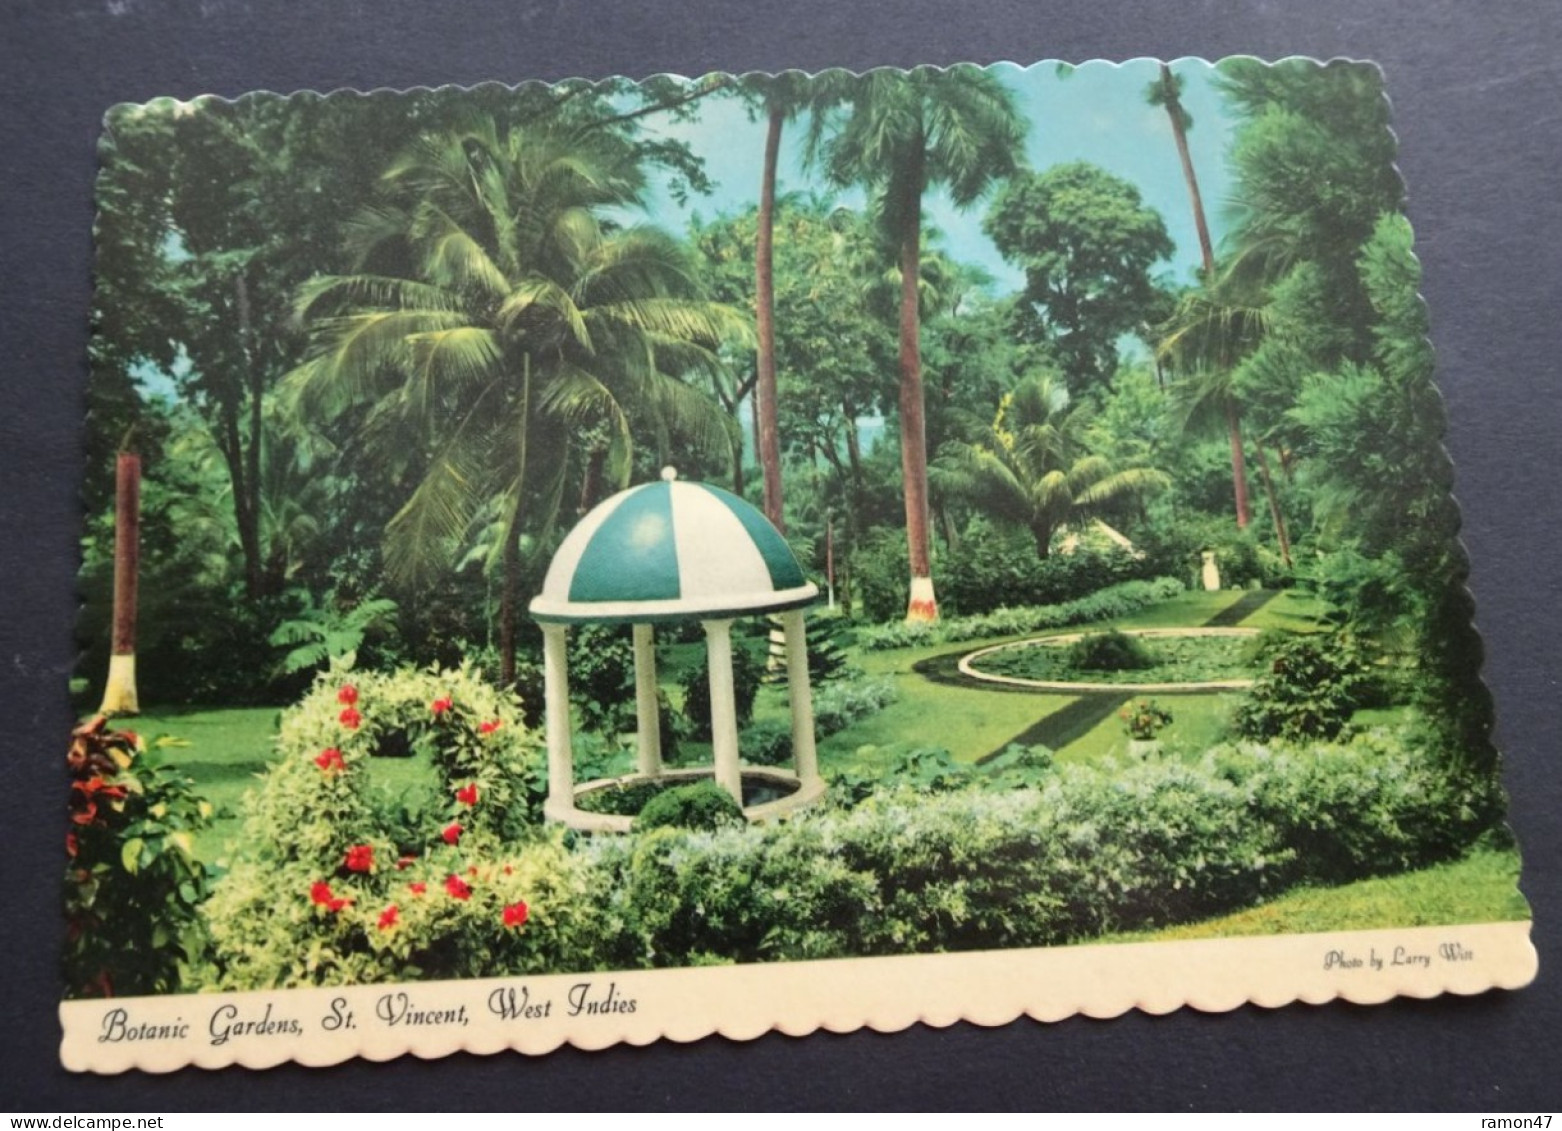 St. Vincent - Botanic Gardens - Photo Larry Witt - Dexter Press - Publisher Reliance Printery, St. Vincent, # DT-53655-C - San Vicente Y Las Granadinas